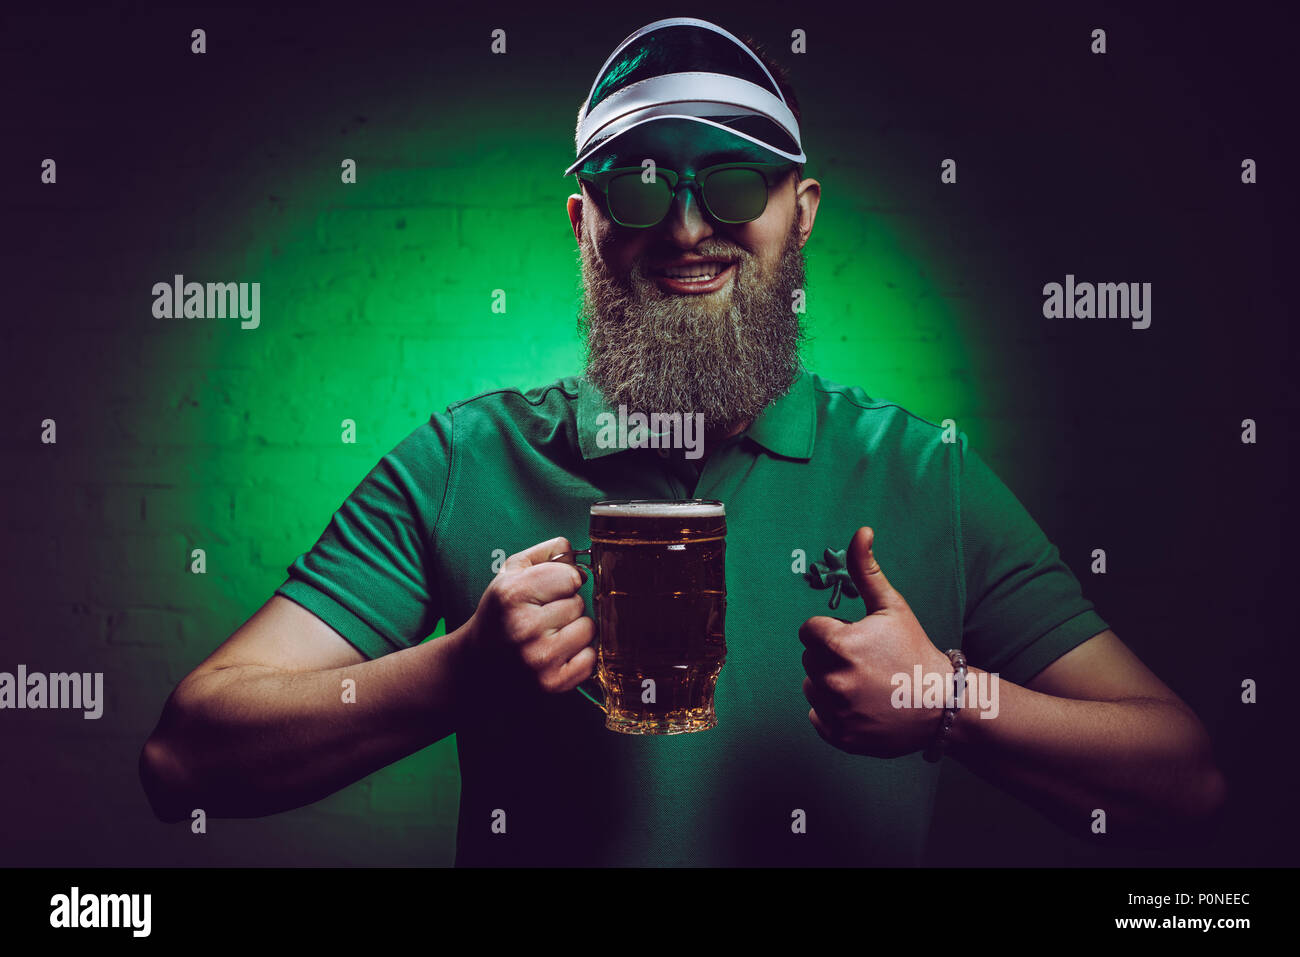 Lächelnd bärtigen Mann hält ein Glas Bier und zeigen Daumen hoch, st patricks day Konzept Stockfoto